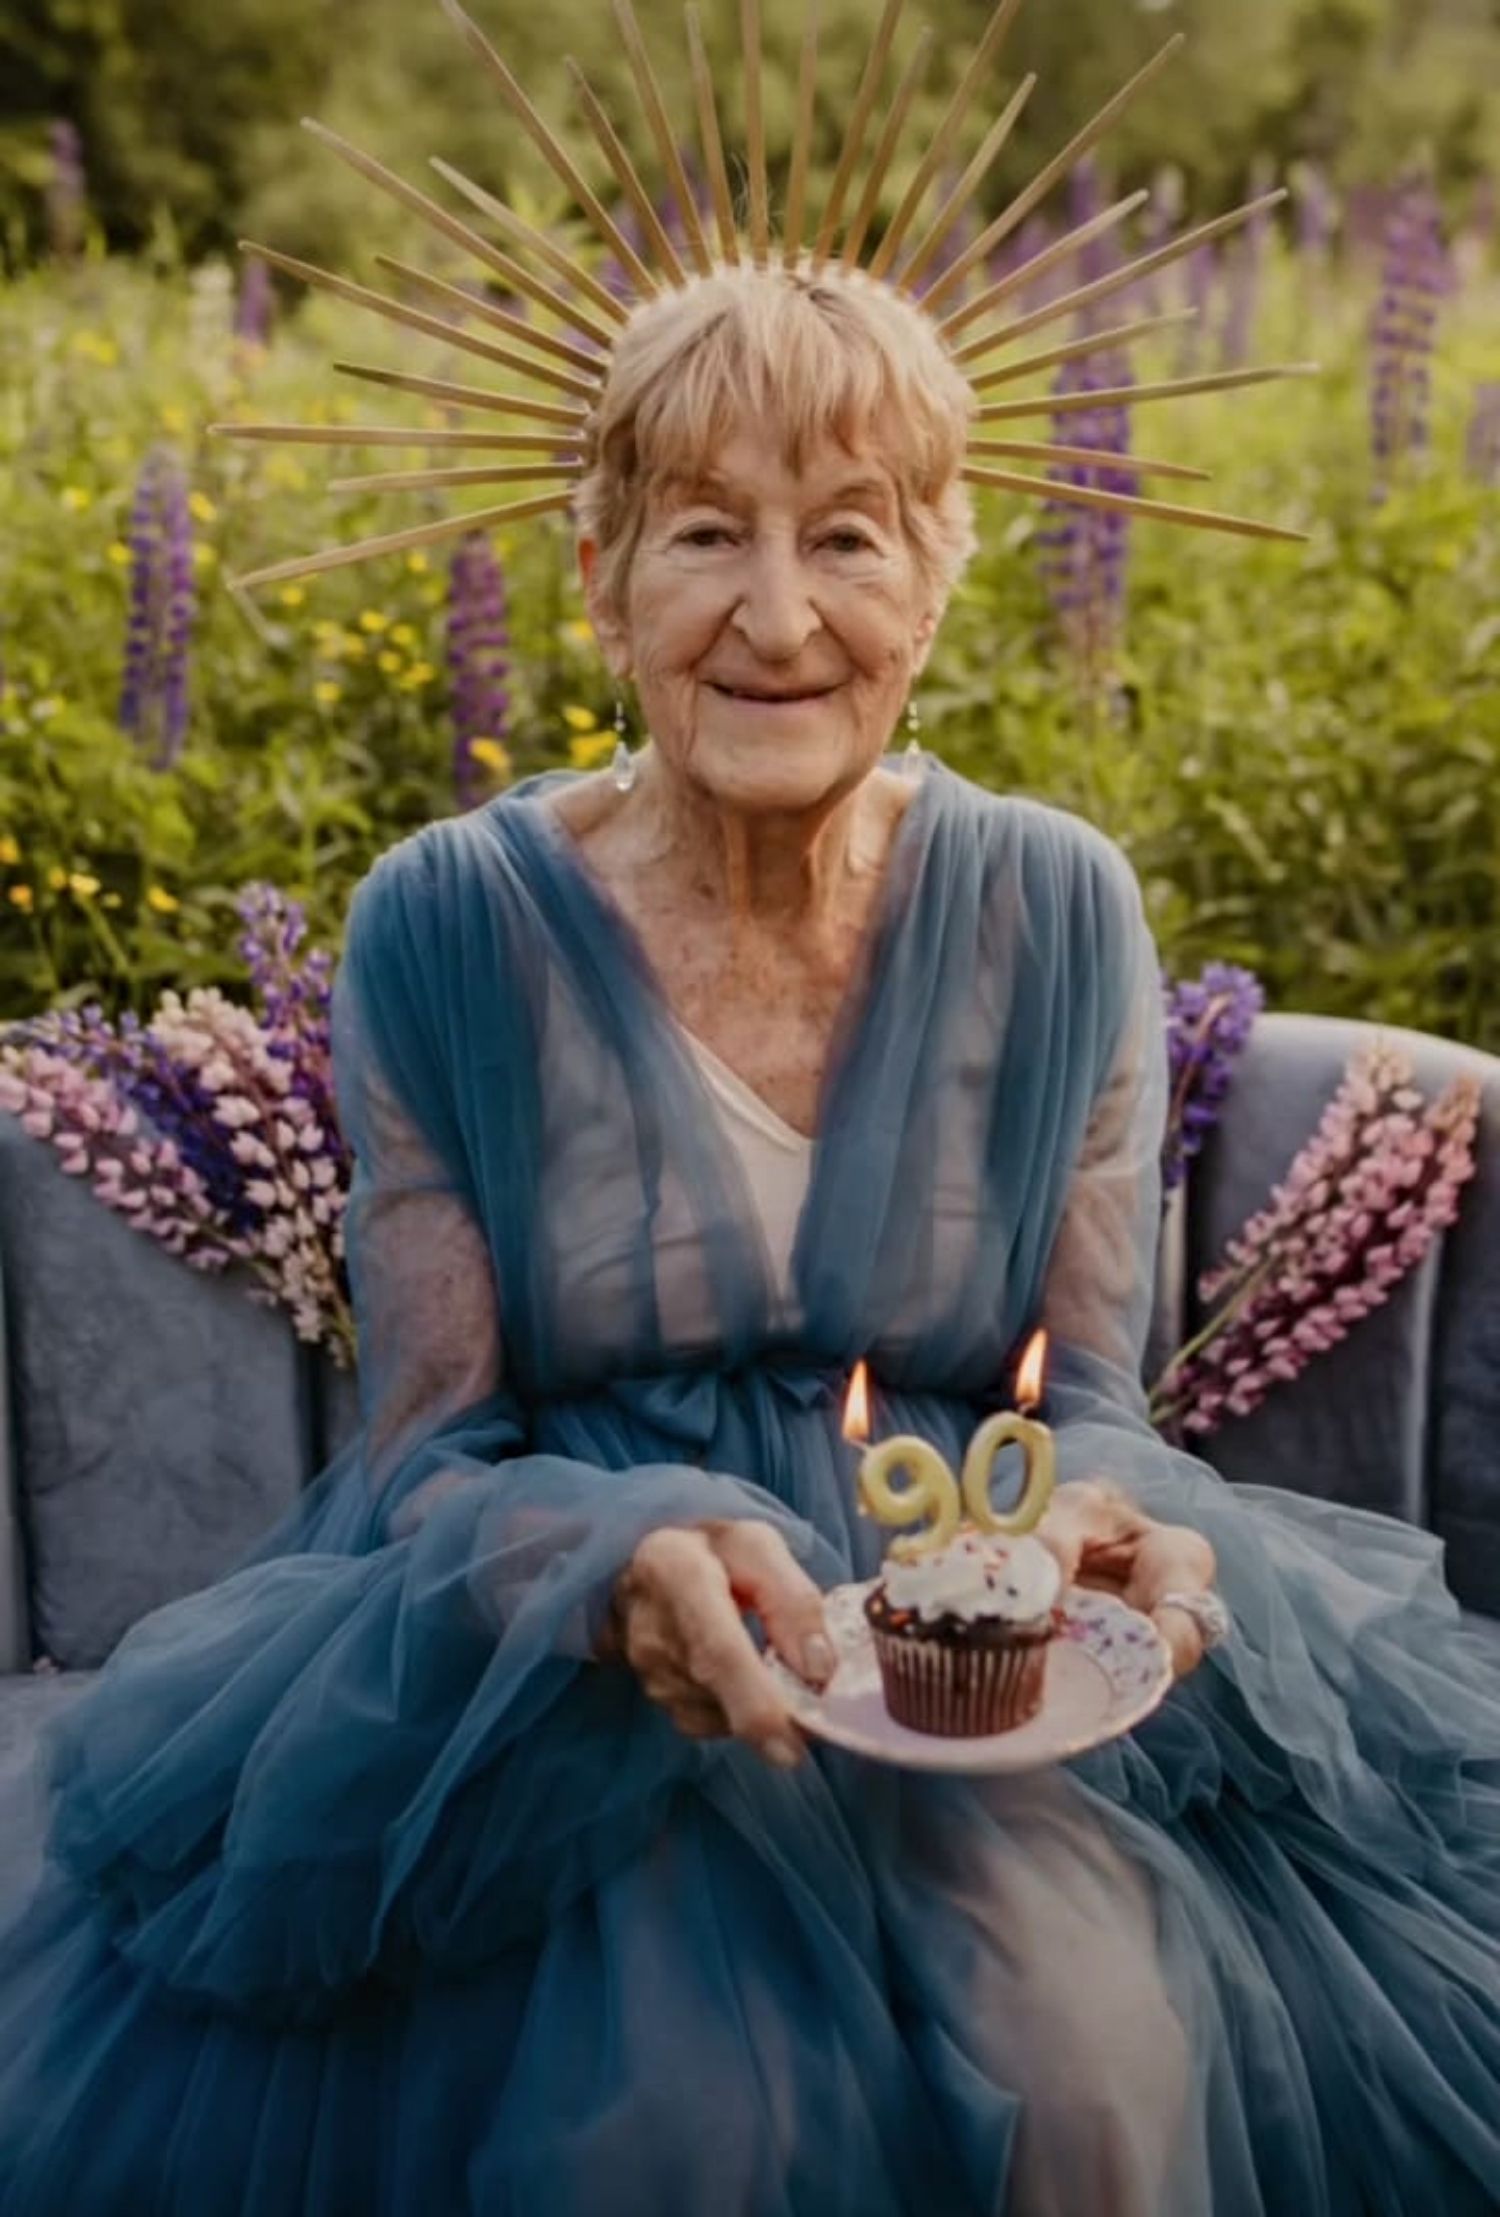 VÍDEO: La memorable sesión de fotos que le hace una joven a su abuela para celebrar su 90 cumpleaños. Foto: Instagram